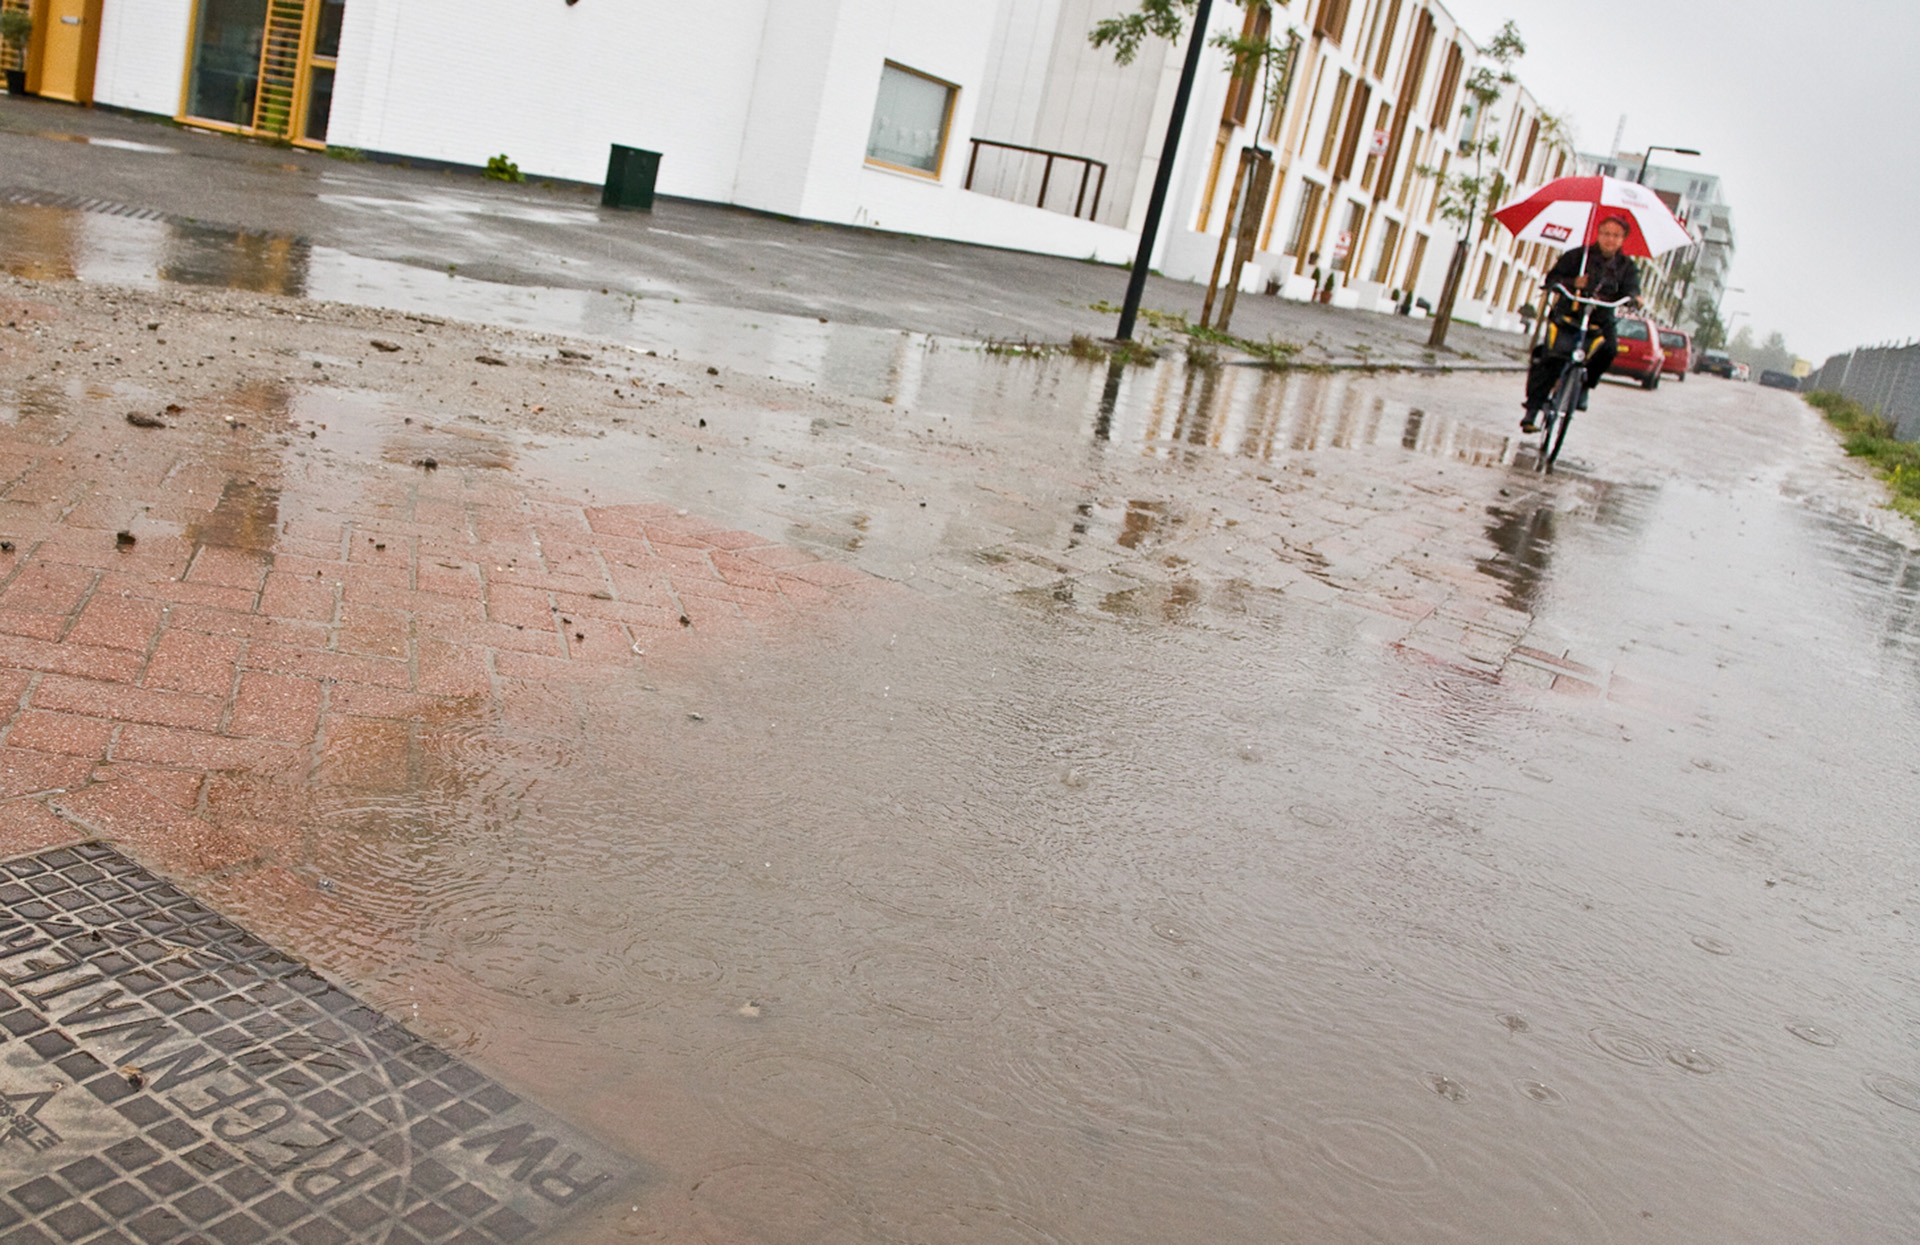 ondergelopen straat met in de verte een fietser met paraplu in de regen